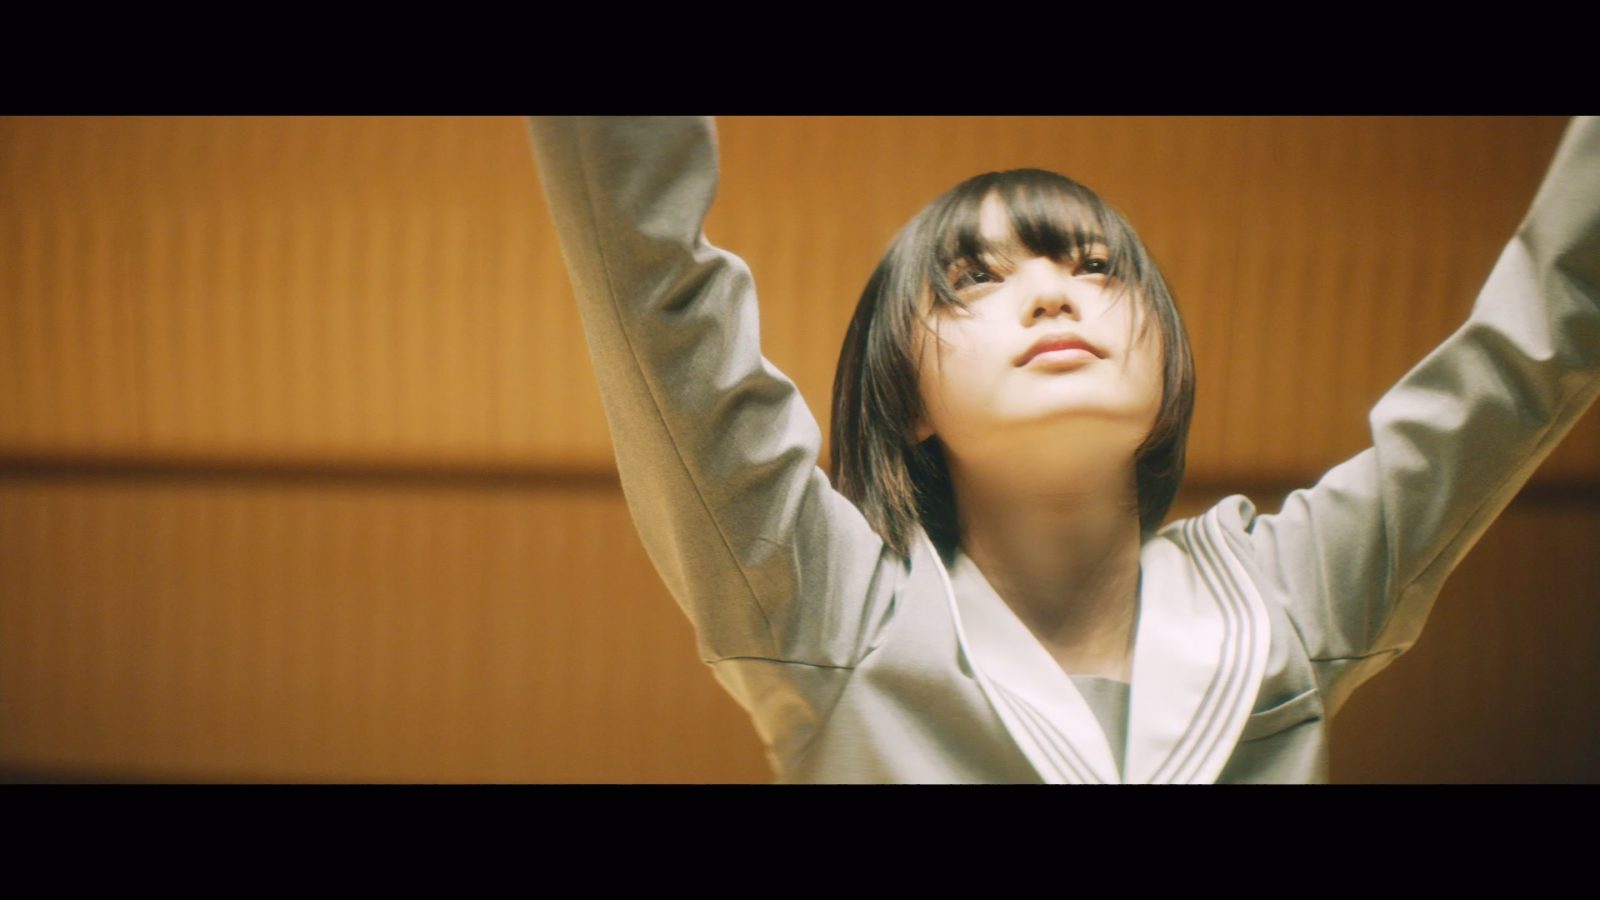 欅坂46 平手友梨奈のソロ曲 角を曲がる のmusic Videoが突如公開に